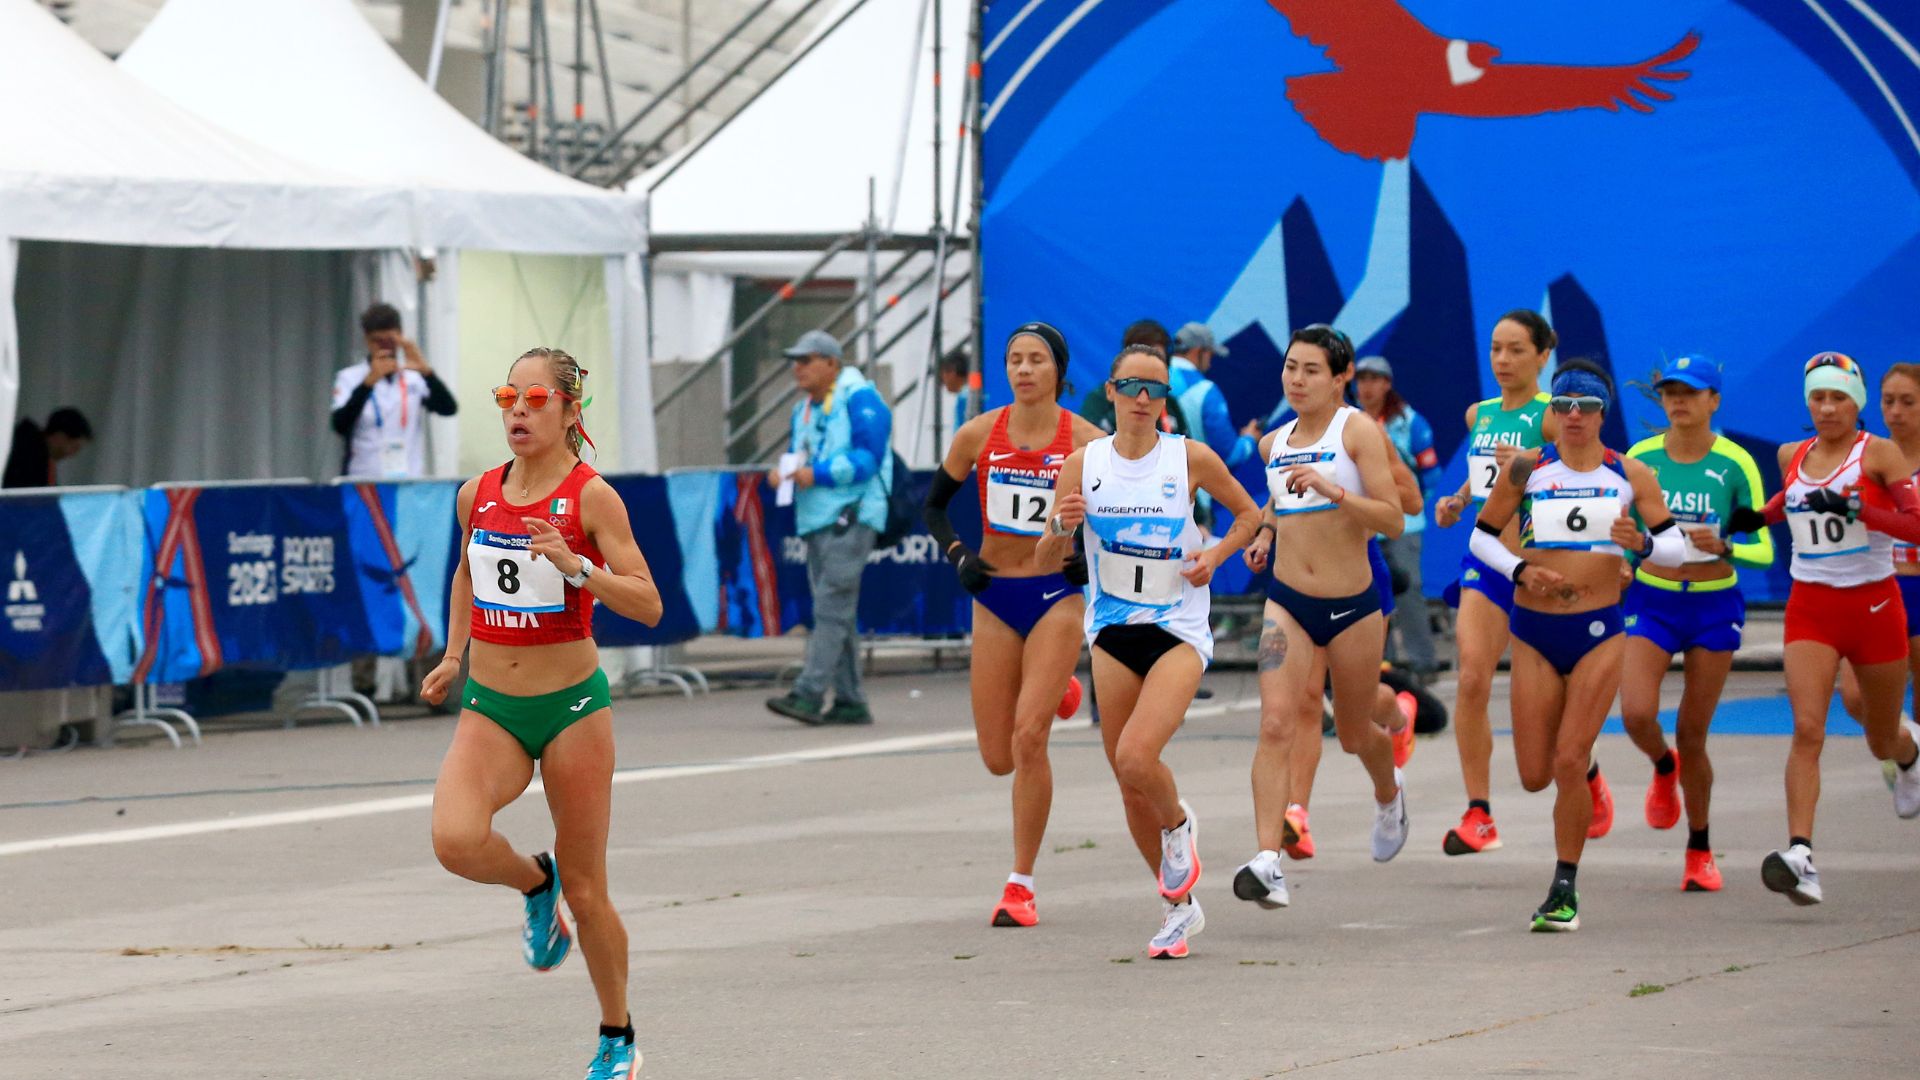 La mexicana Citlali Moscote arremete sobre el final y gana el oro en el Maratón